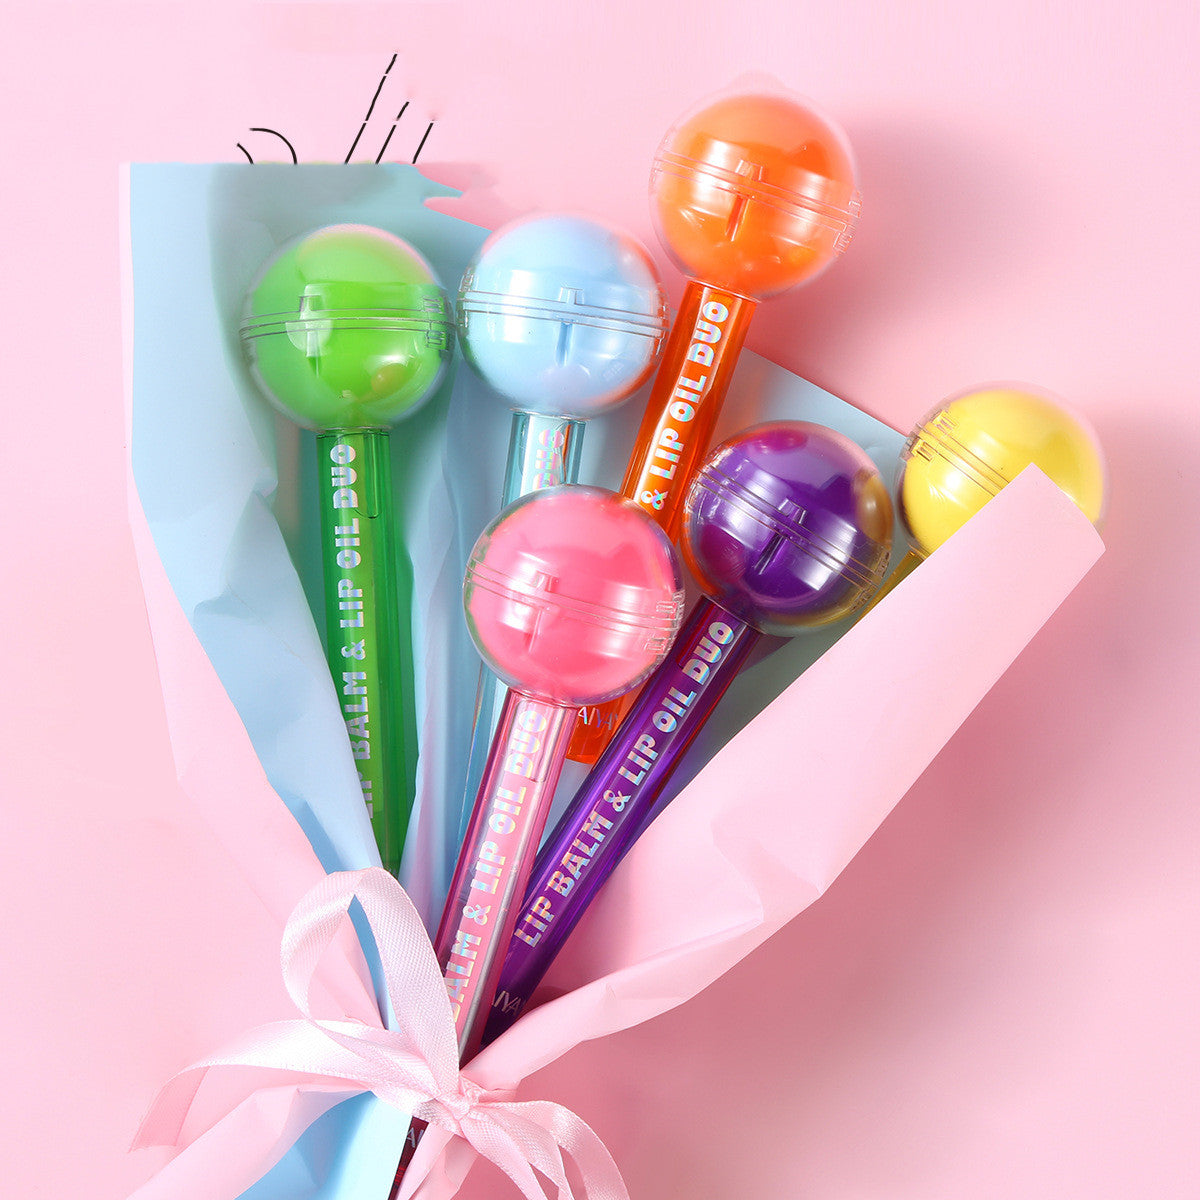 Zwei-in-Eins-Lollipop-Lippenstift mit Farbwechsel